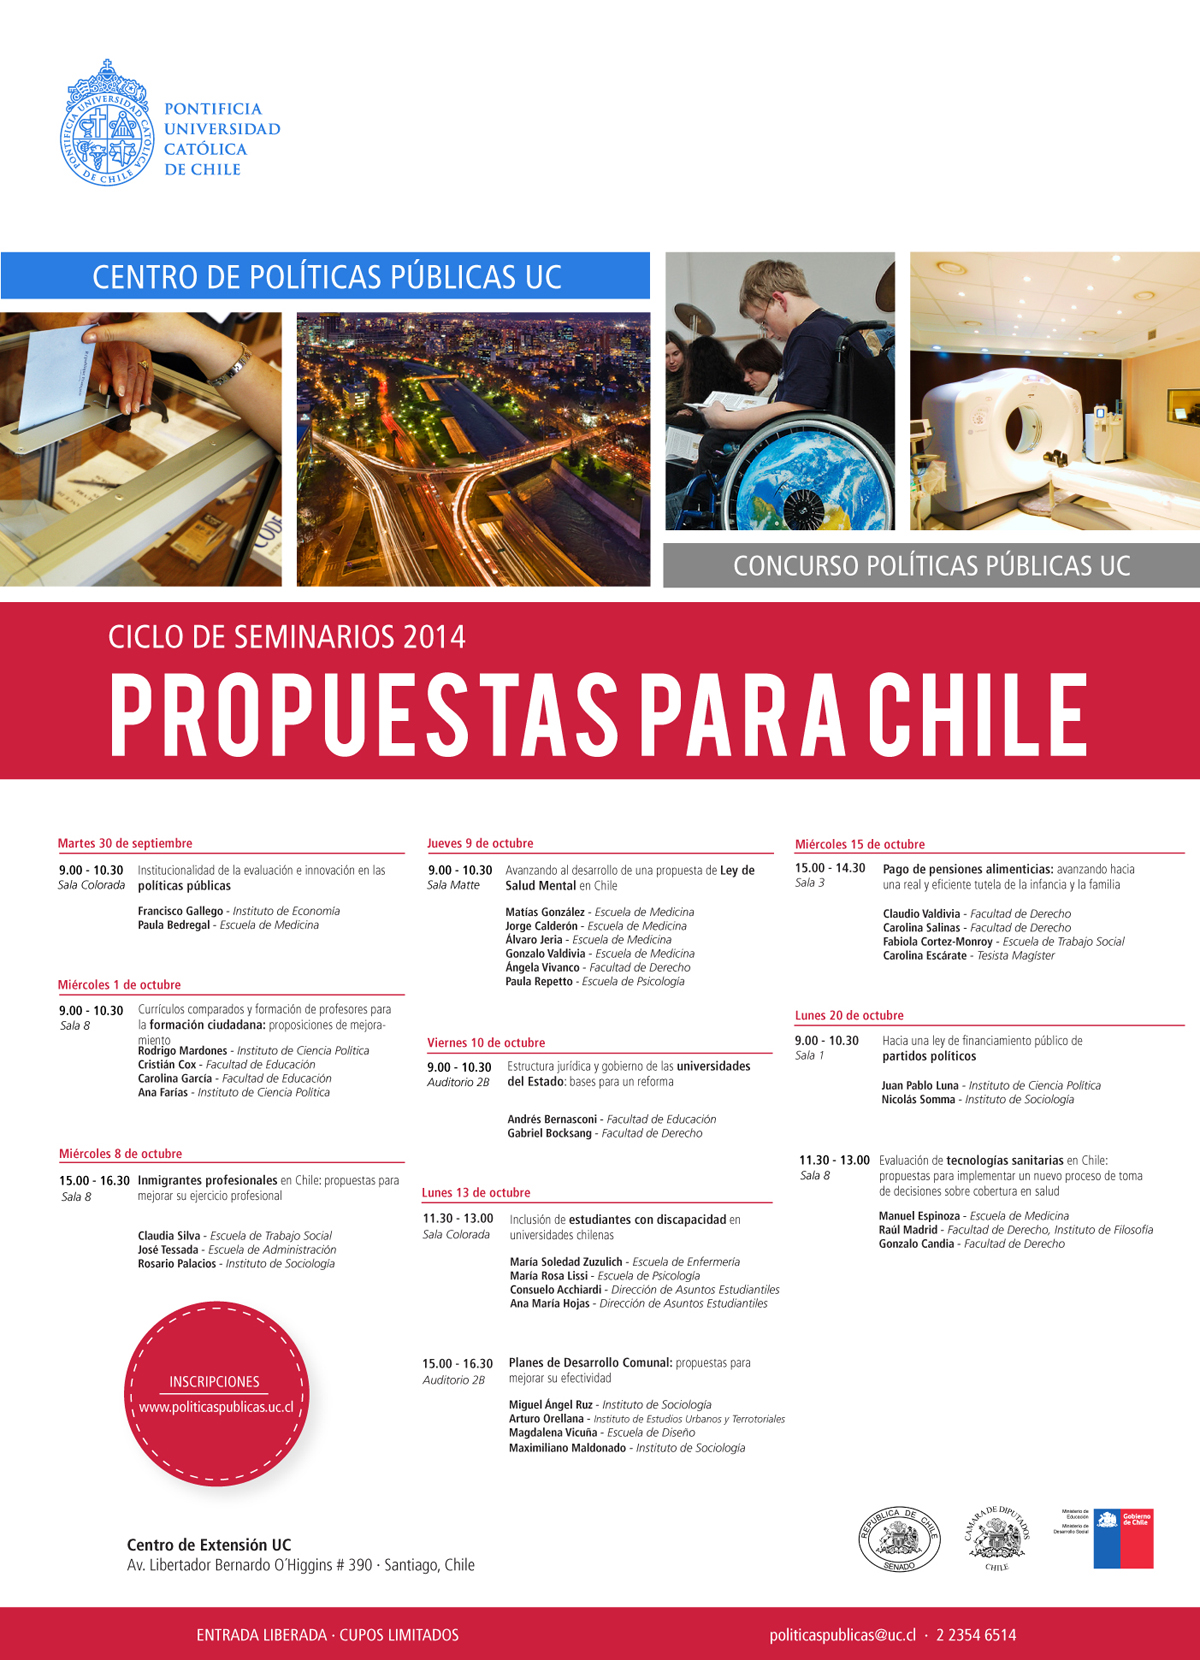 ciclo de debates propuestas para chile - AFICHE2